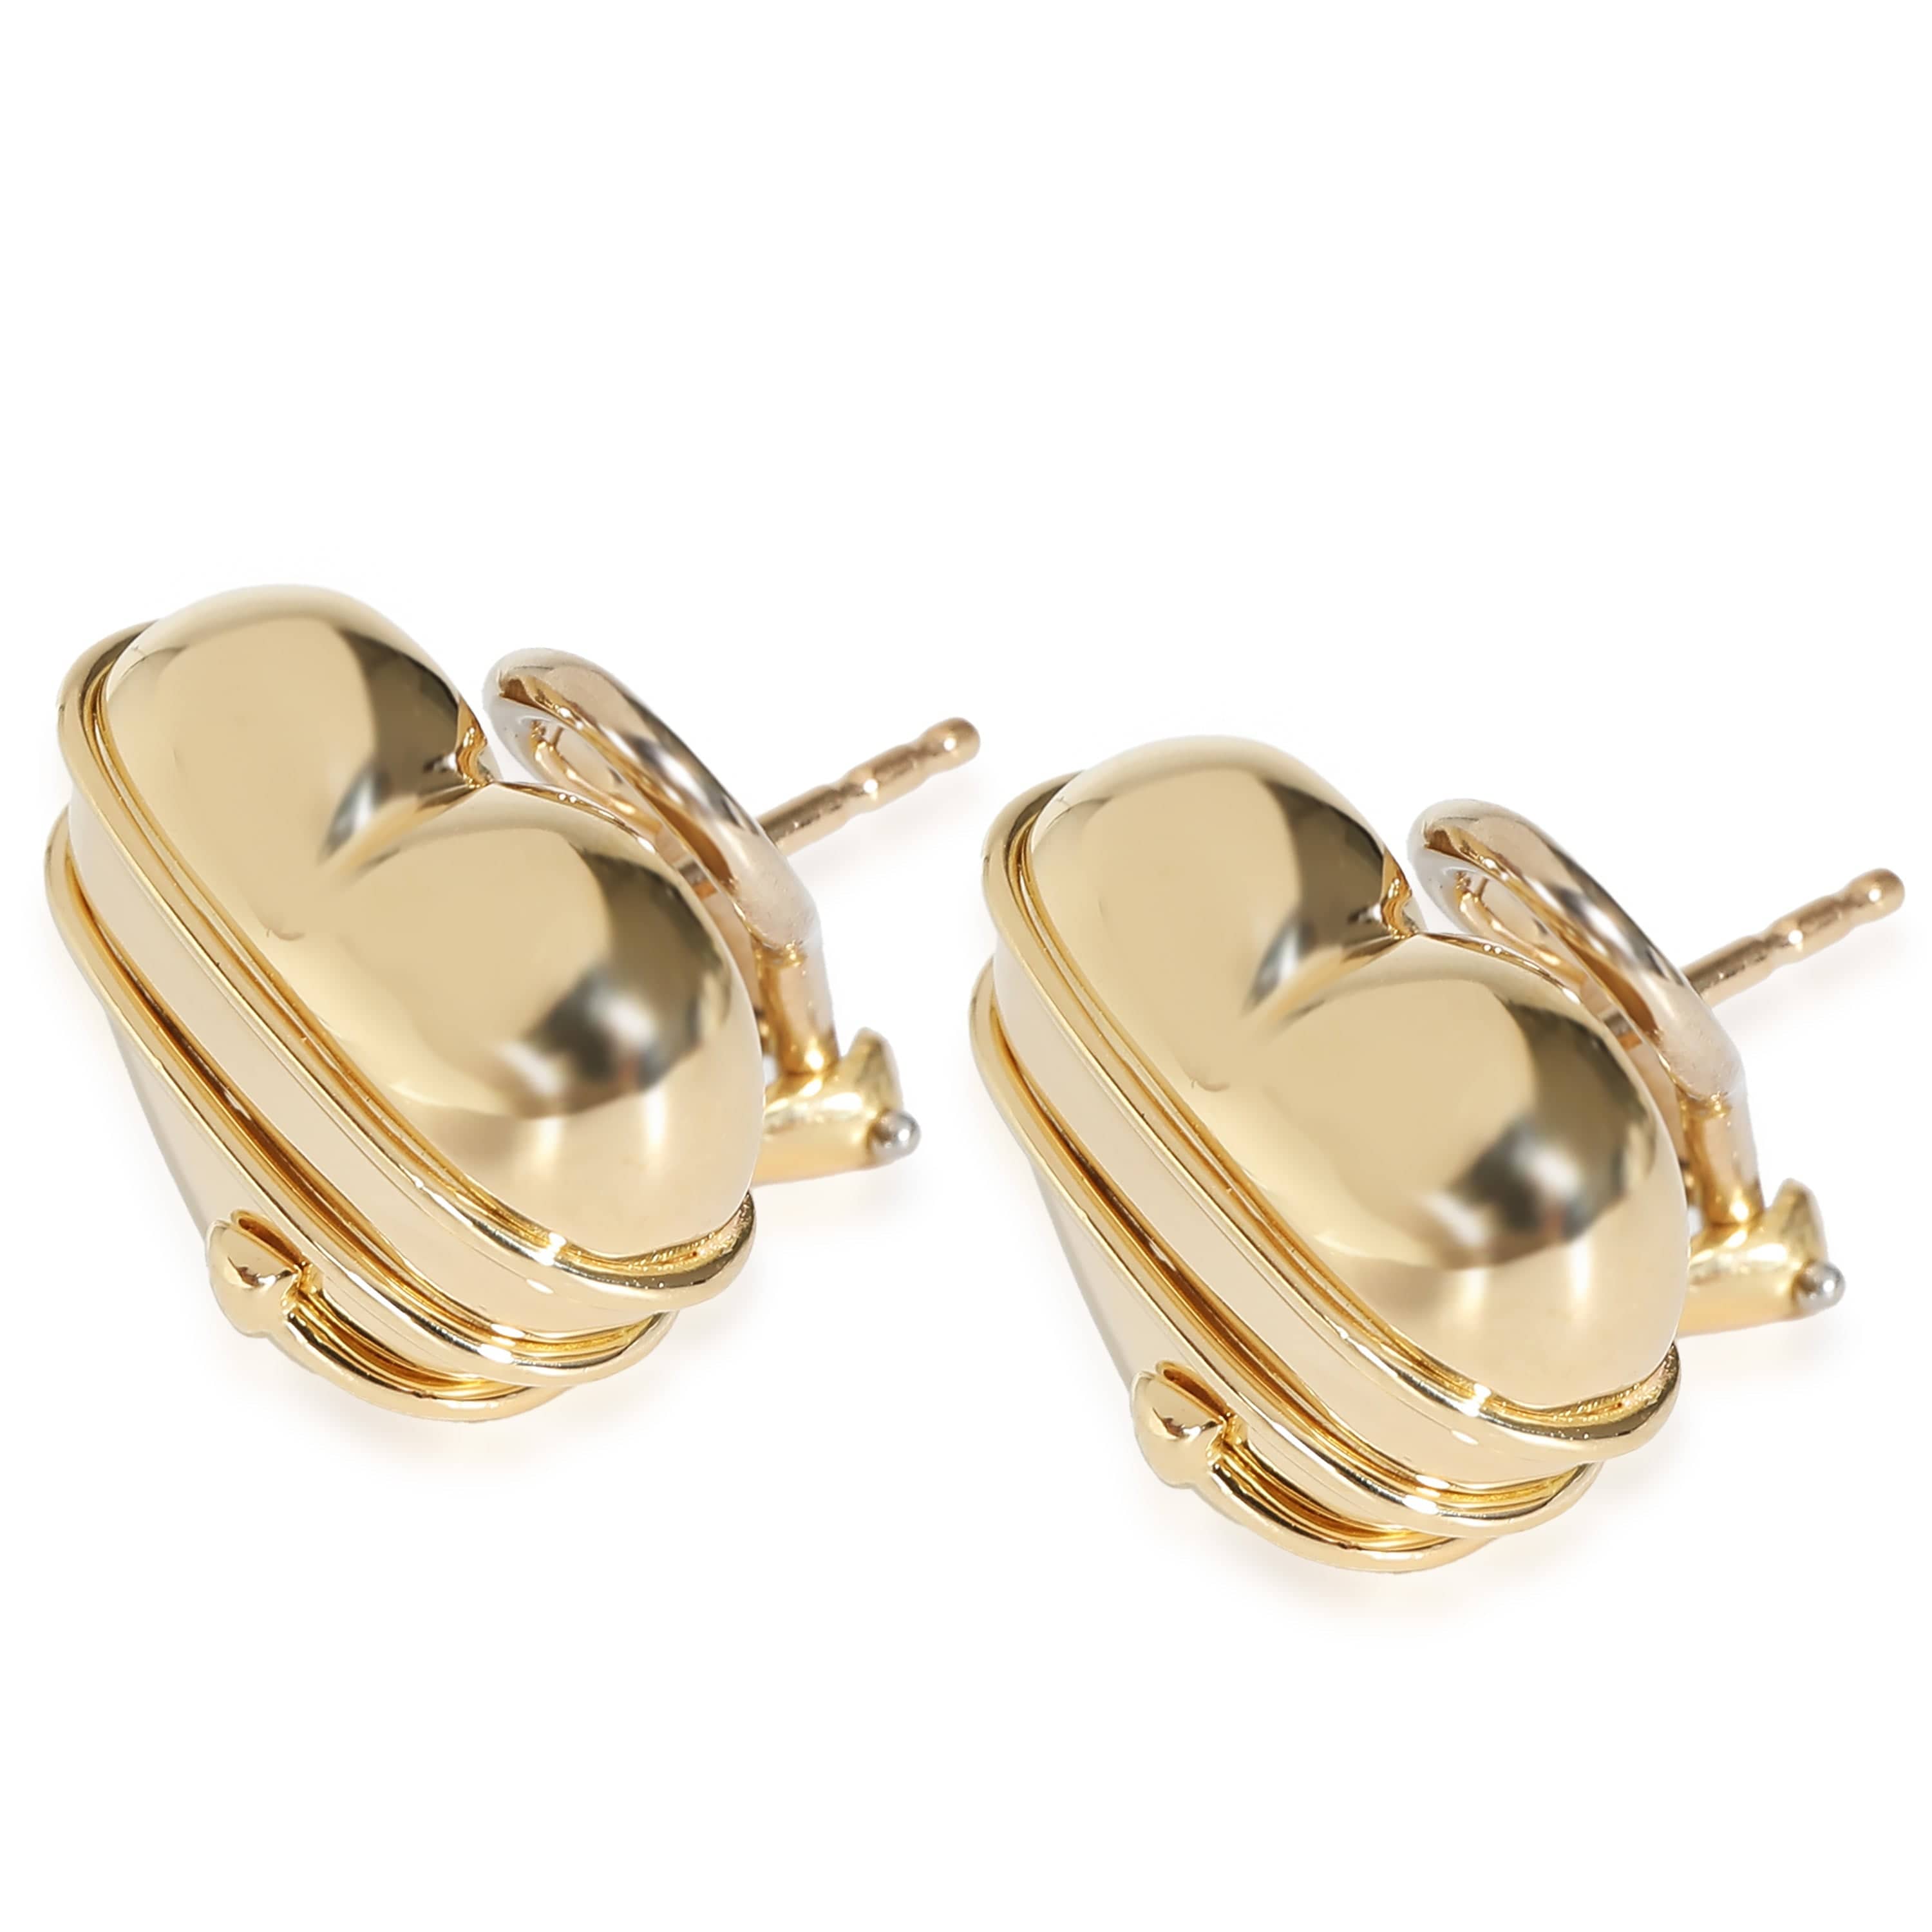 Tiffany & Co. Tiffany & Co. Vintage Arrow Wrapped Heart Earrings in 18K Yellow Gold